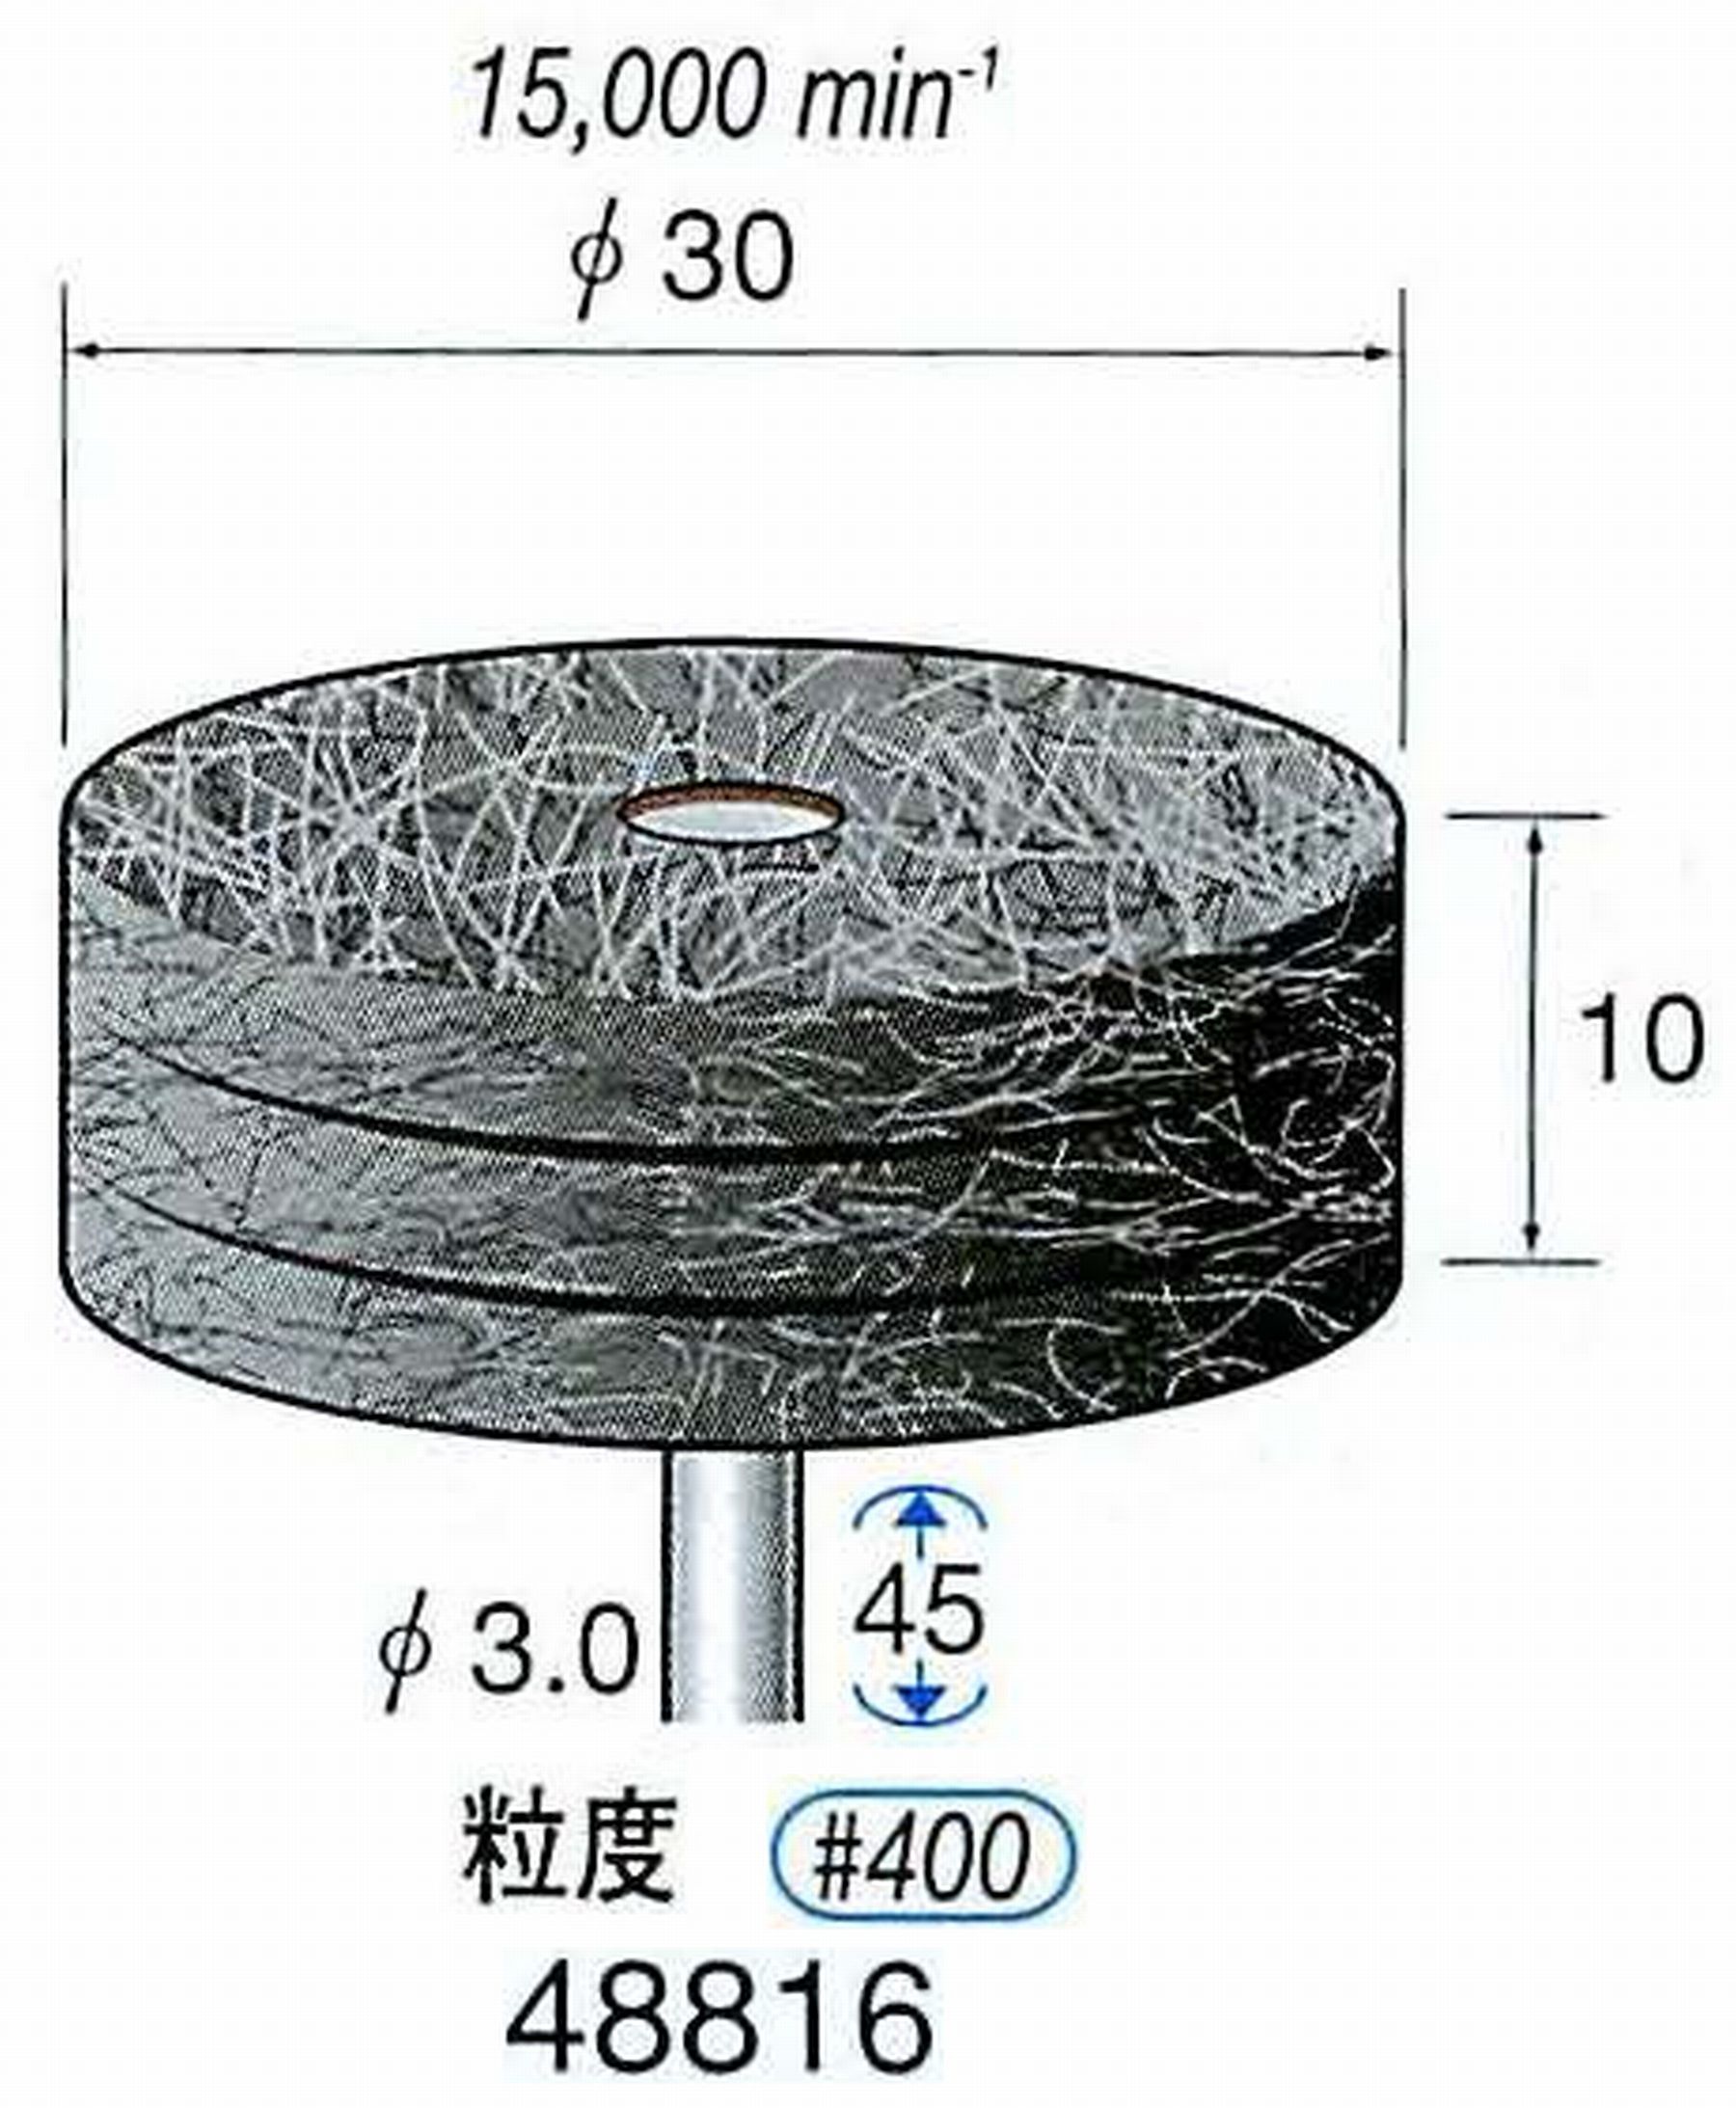 ナカニシ/NAKANISHI スポンジサンダー(研磨砥粒入り) 軸径(シャンク)φ3.0mm 48816